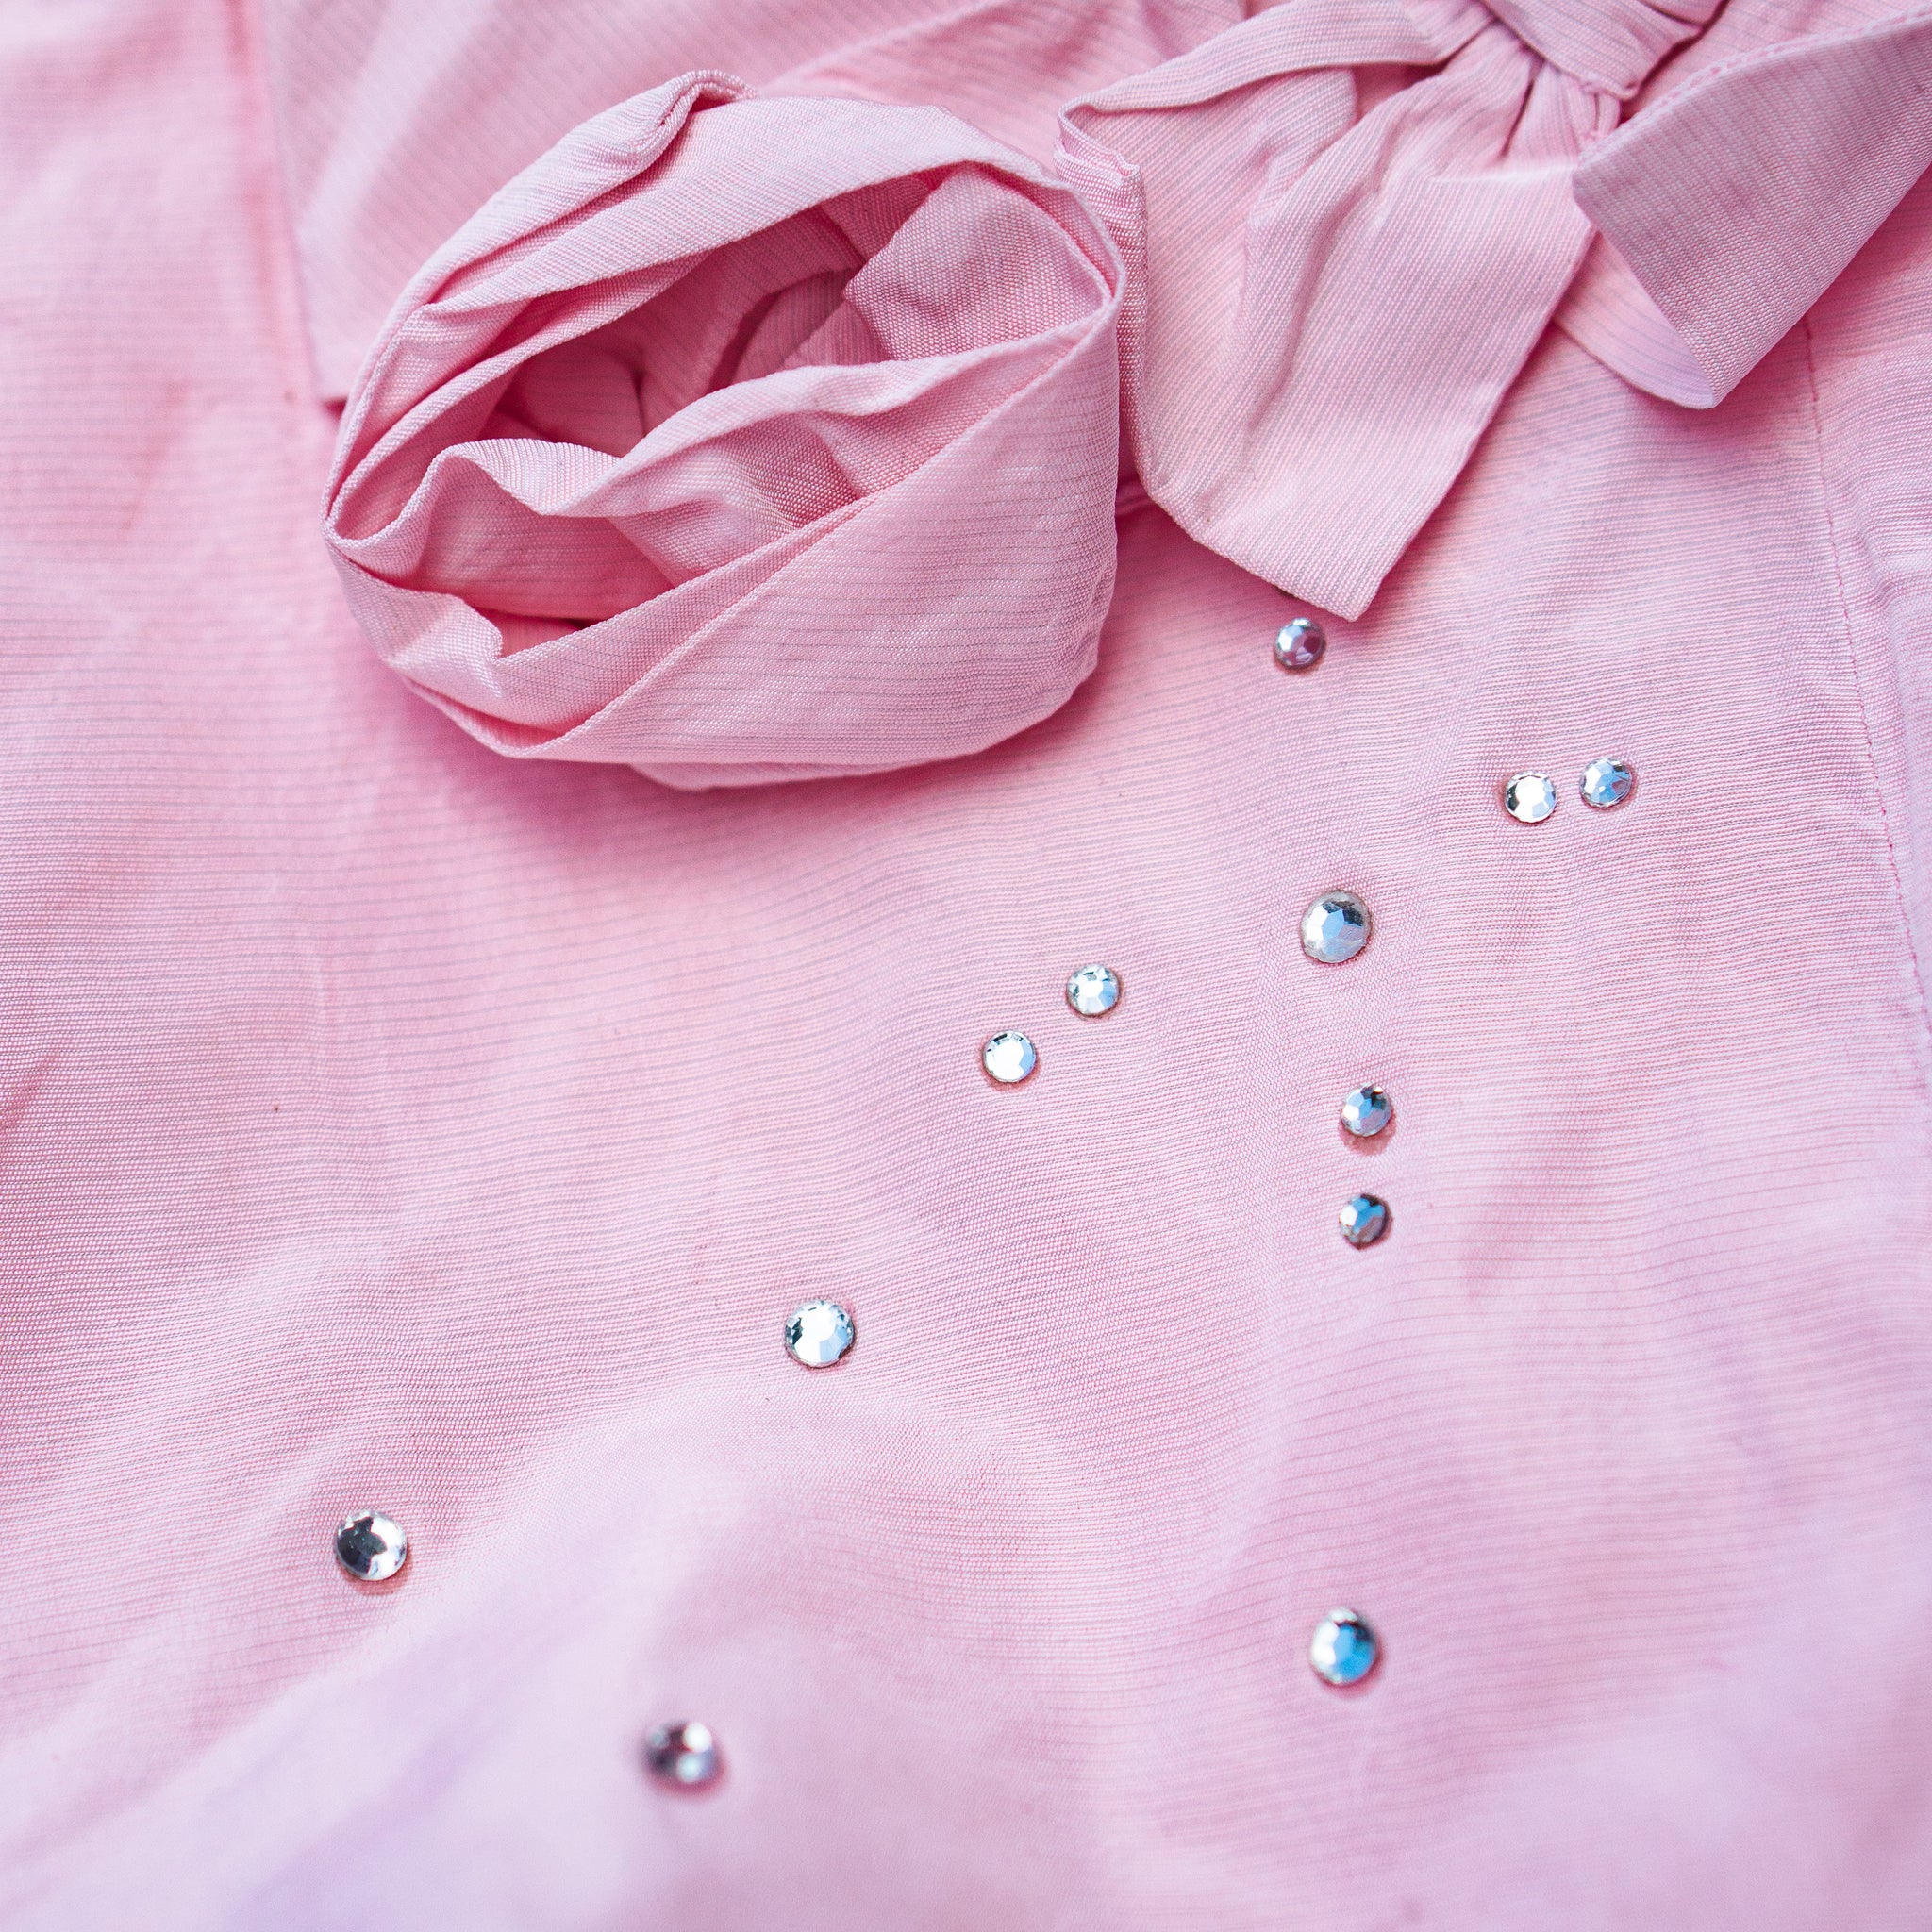 Rochie roz tafta / Pink dress taffeta